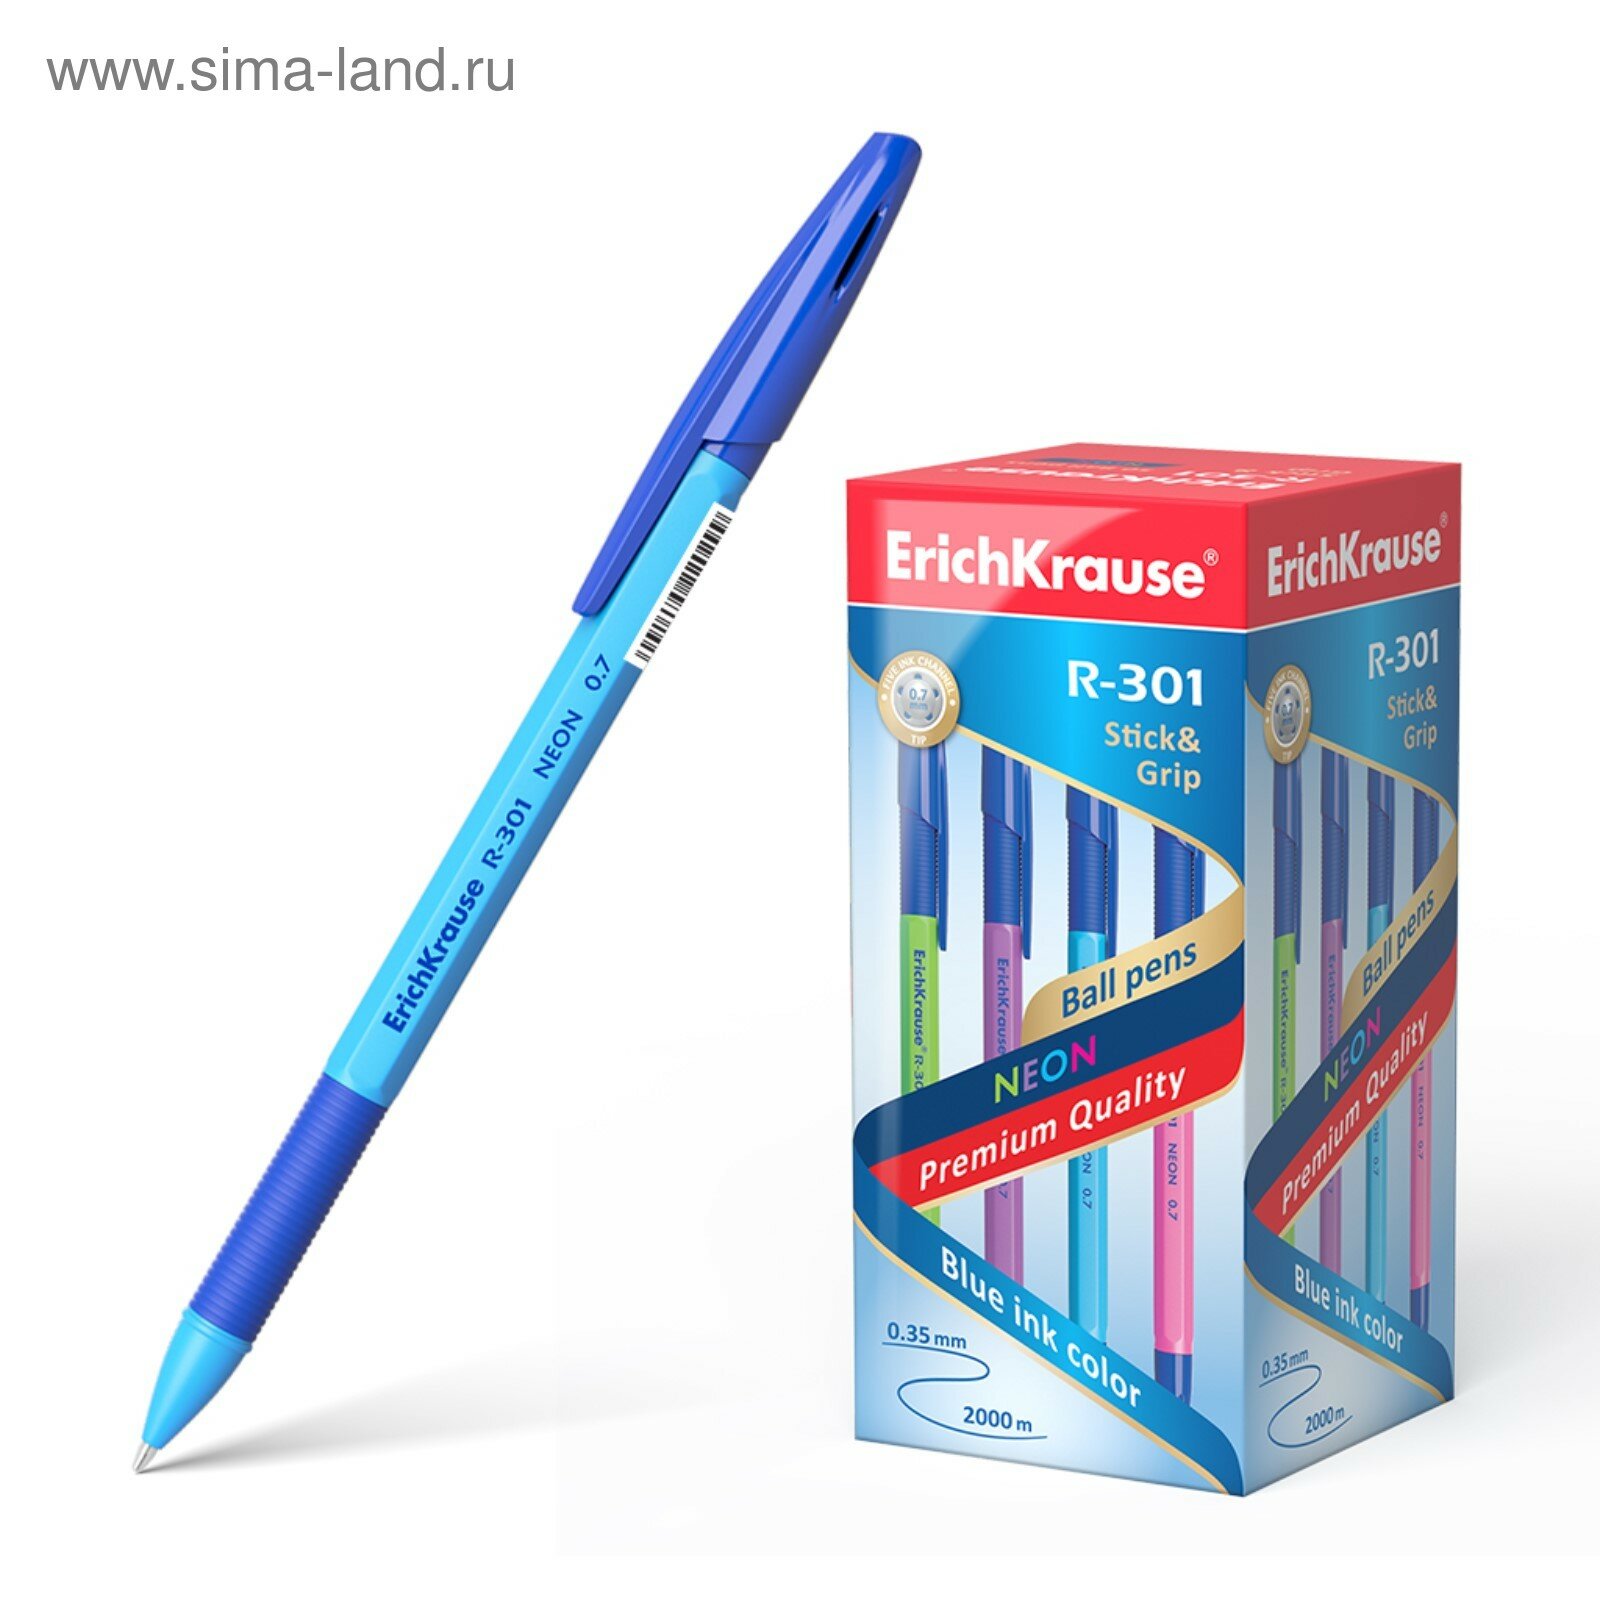 Ручка шариковая R-301 Neon Stick & Grip, узел 0.7 мм, чернила синие, резиновый упор, длина линии письма 2000 метров, микс